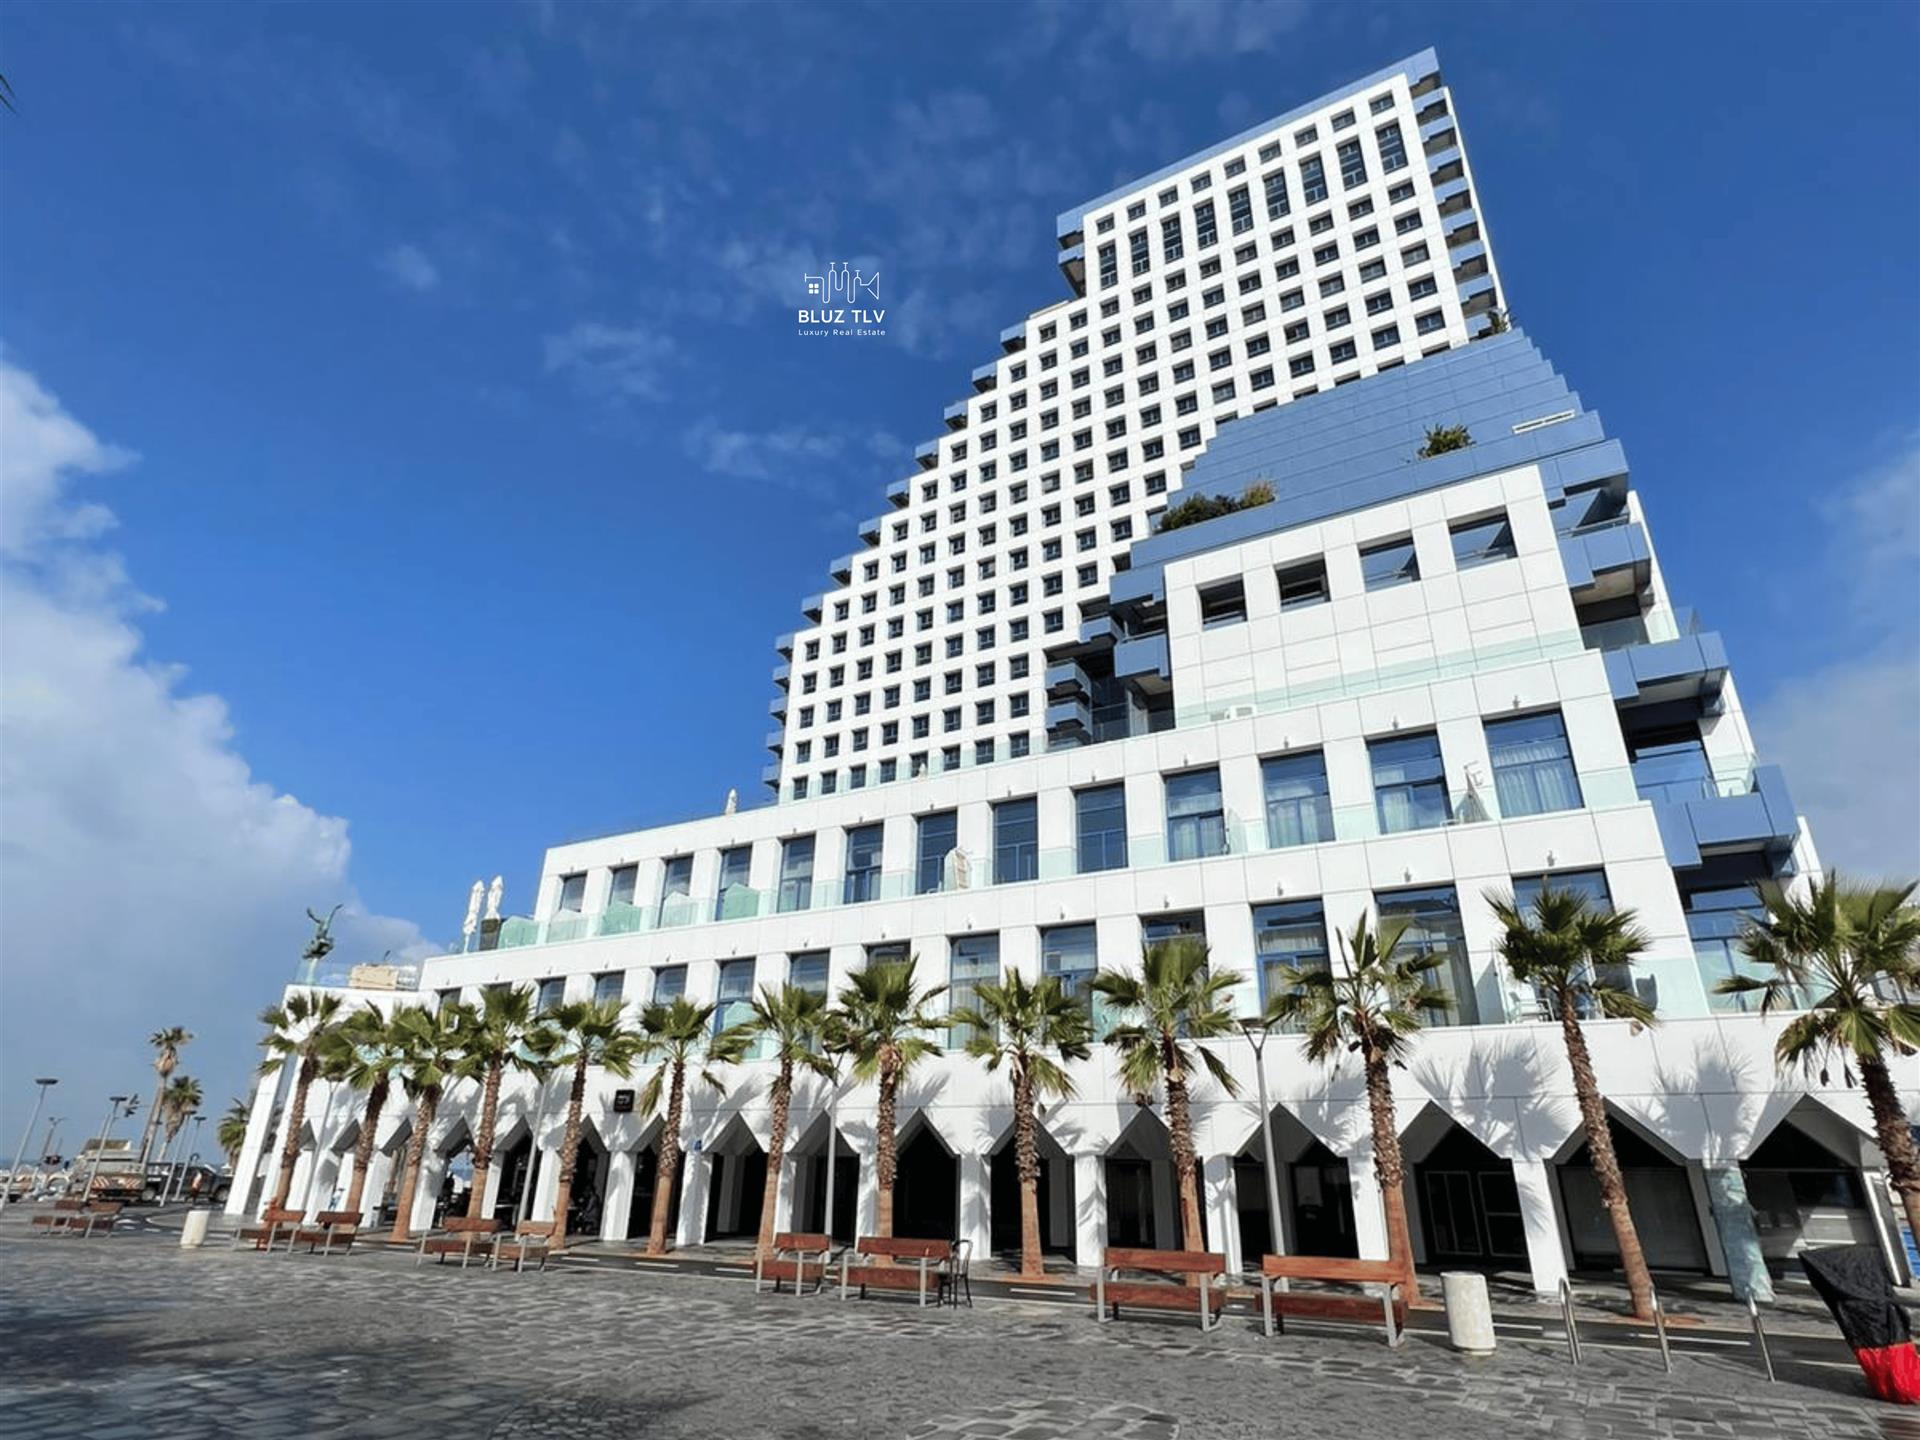 דירת 4 חדרים יוקרתית על החוף במגדל האופרה האייקוני בתל אביב